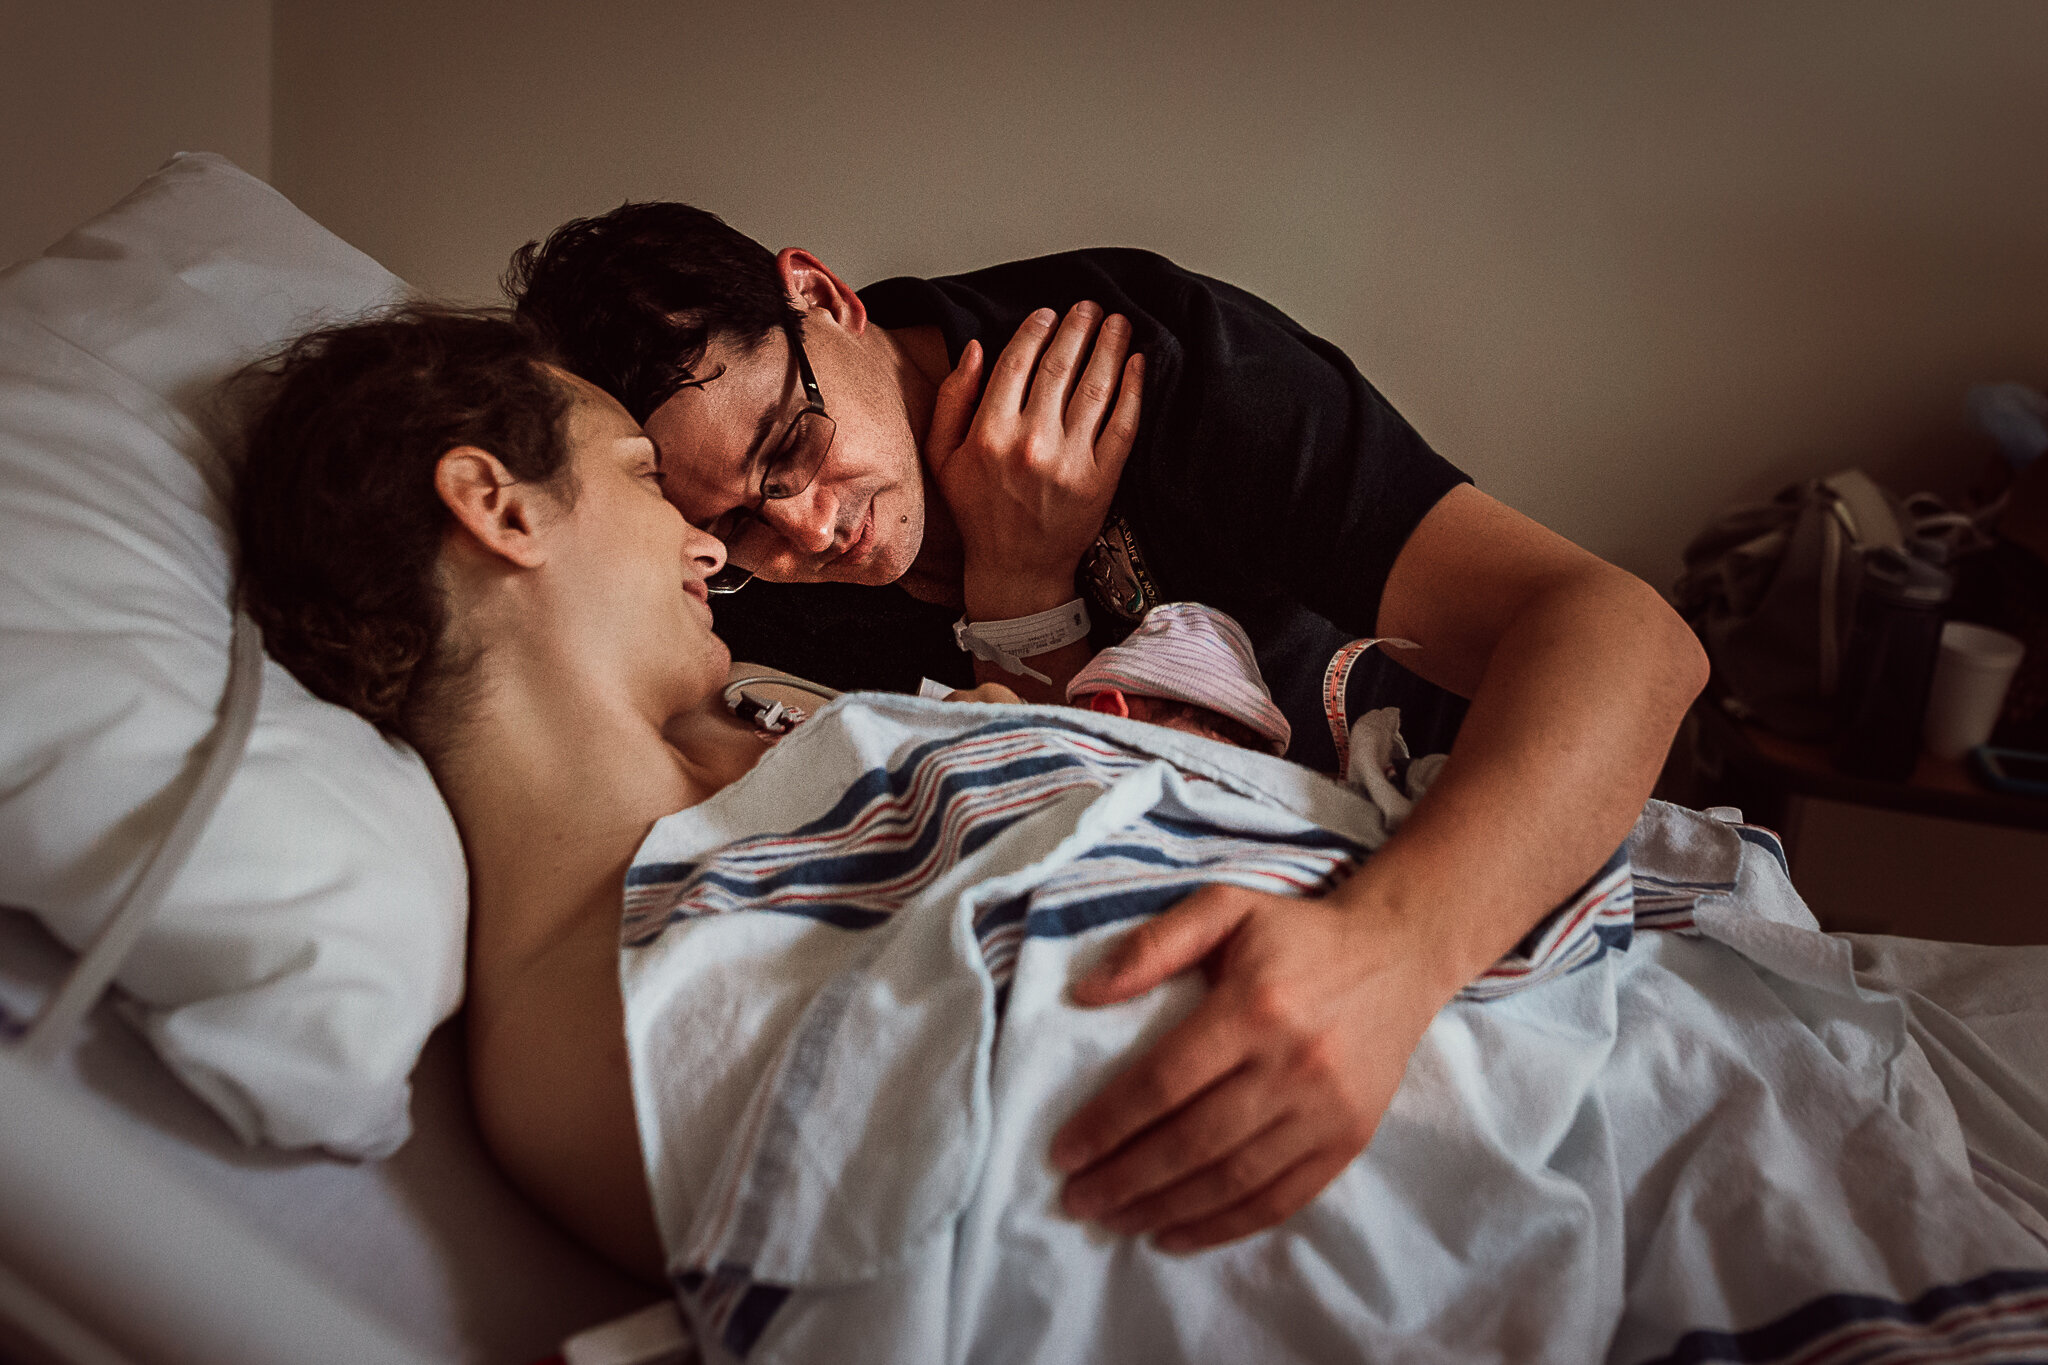 cesarean-birth-postpartum-maggie-williams-3940.jpg